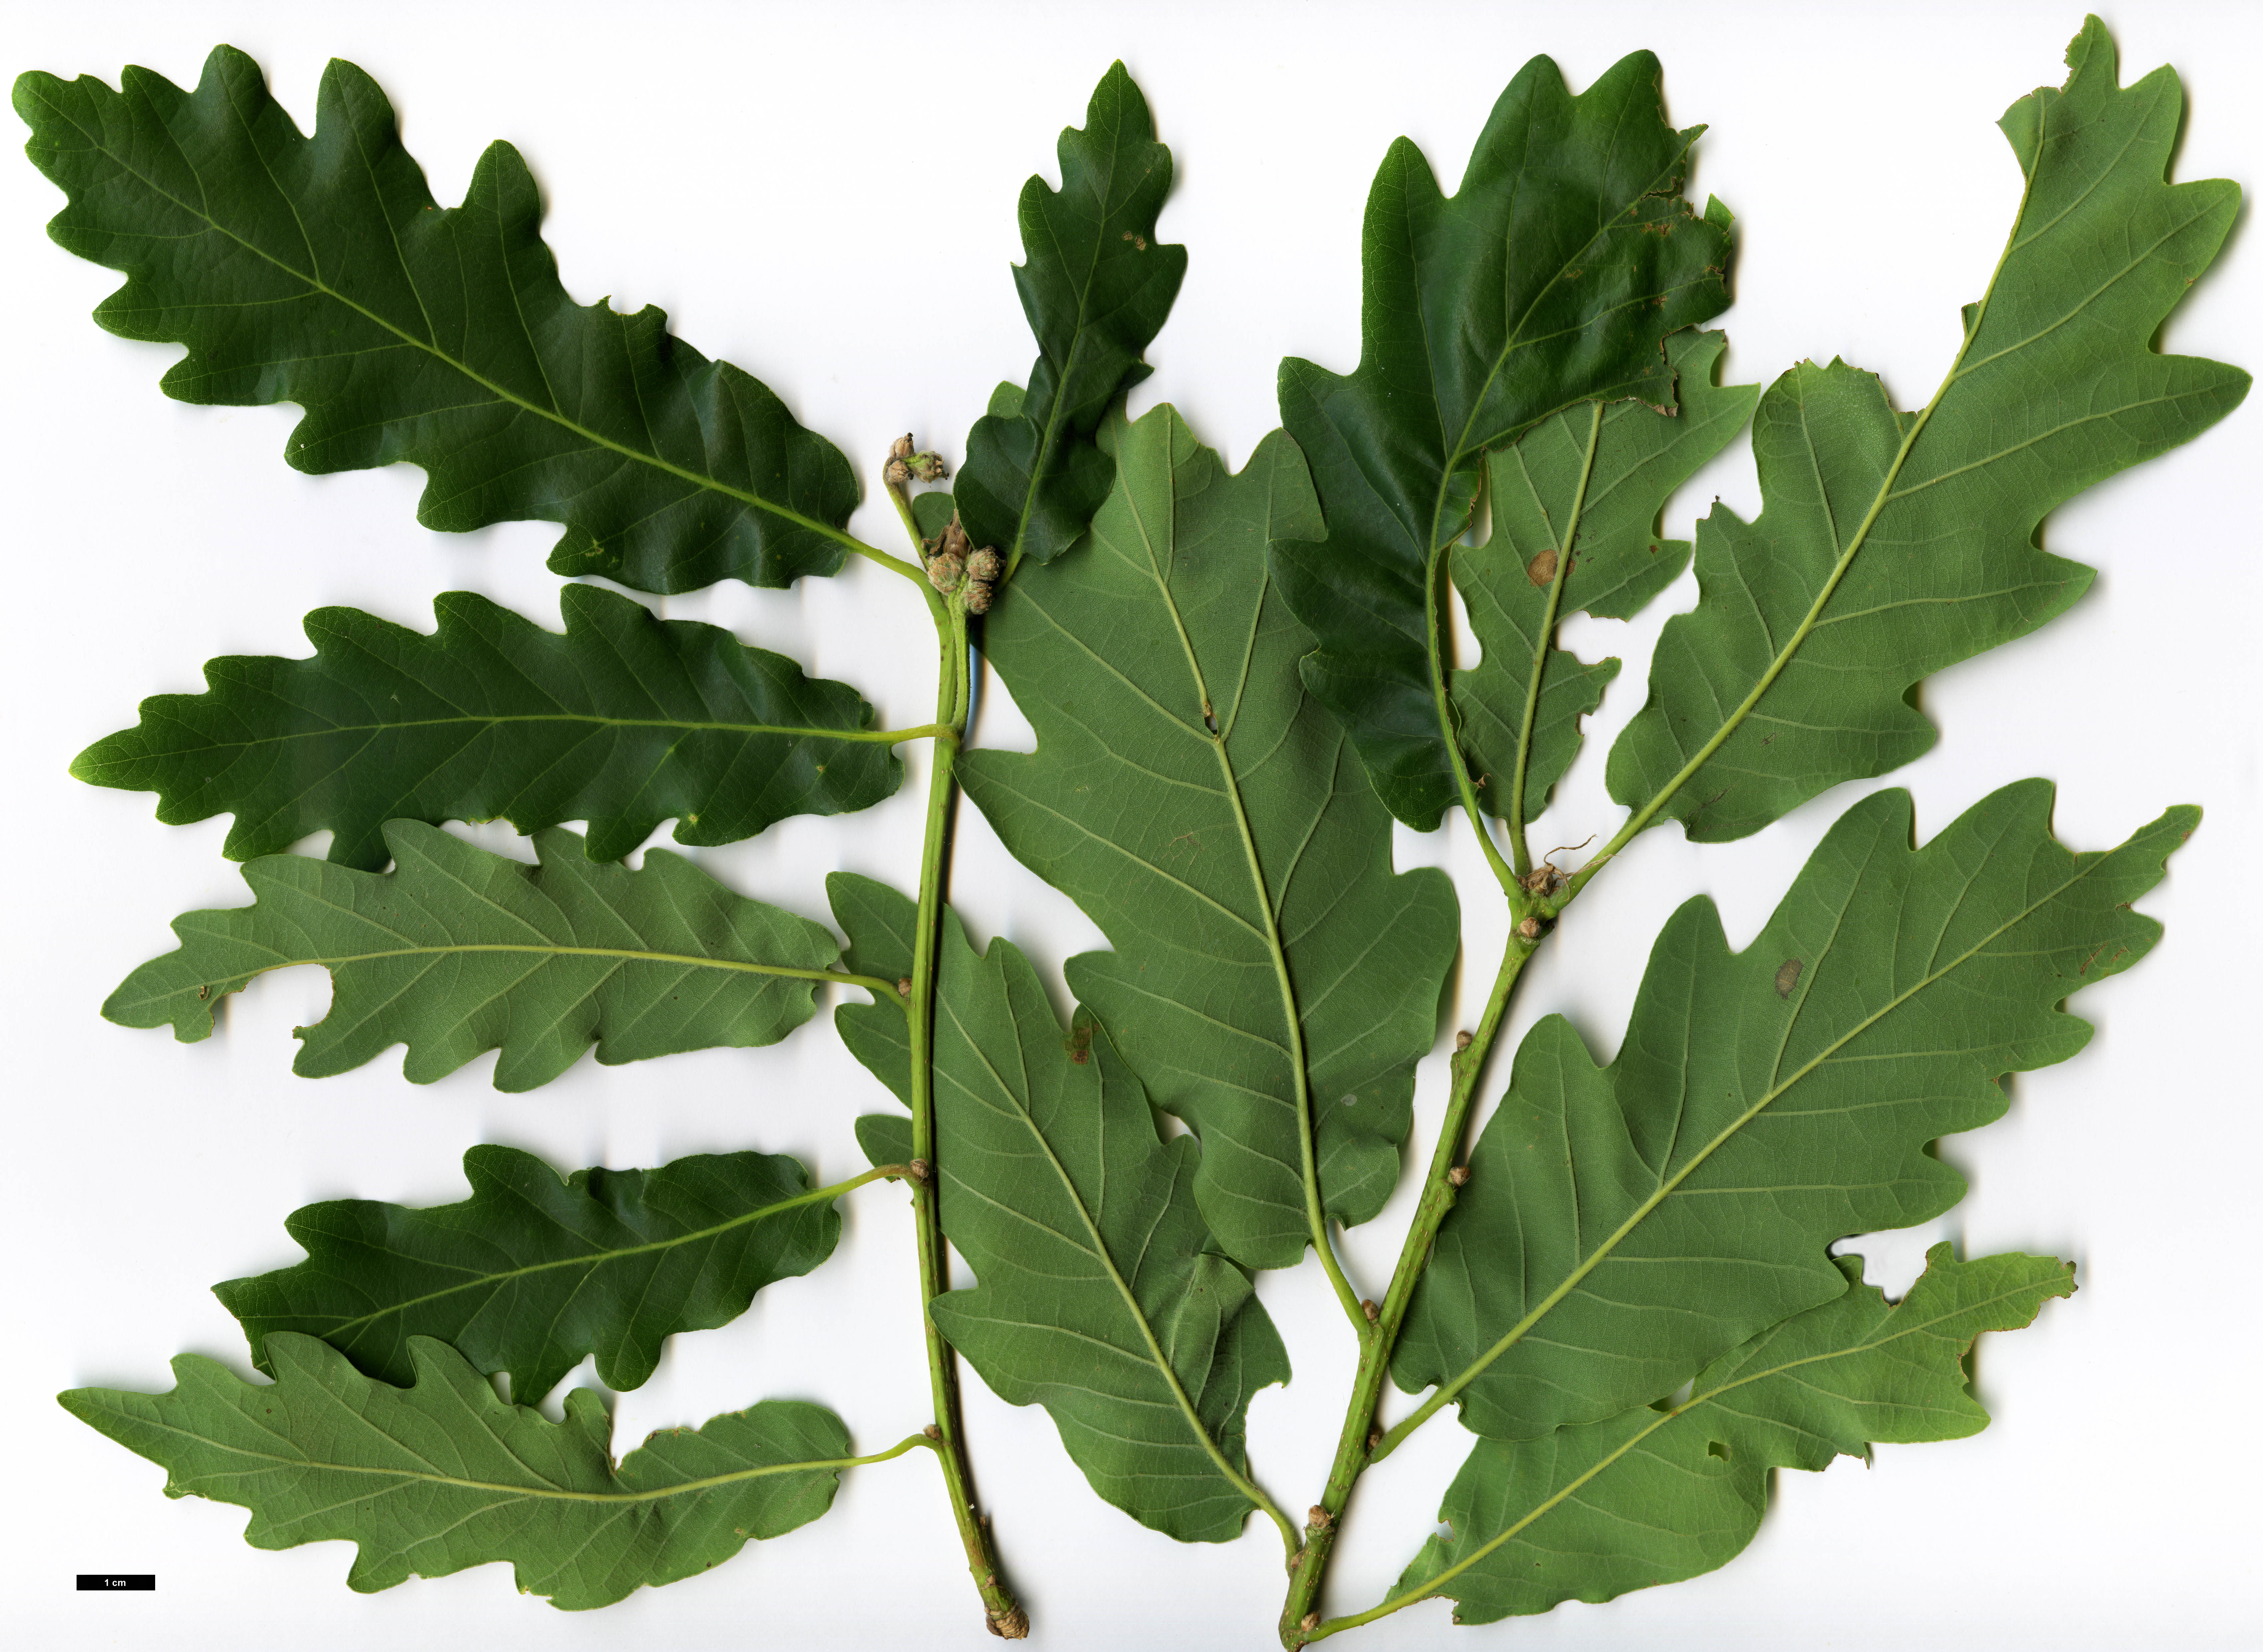 High resolution image: Family: Fagaceae - Genus: Quercus - Taxon: robur - SpeciesSub: subsp. estremadurensis